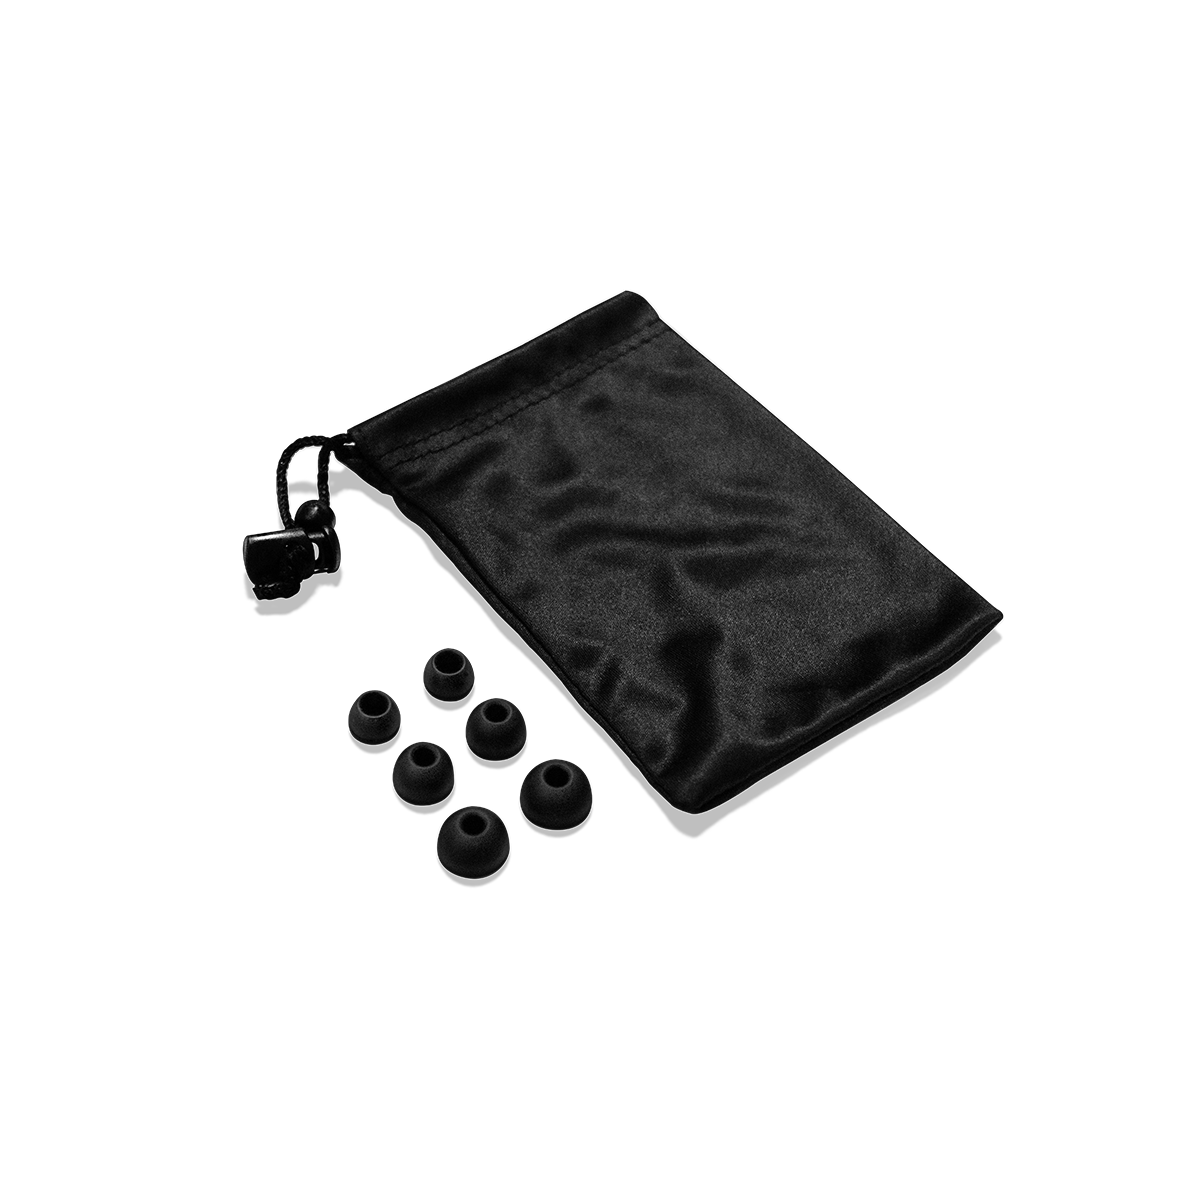 Tai nghe gaming nhét tai SteelSeries Tusq màu đen, jack cắm 3.5mm, phù hợp với nhiều thiết bị, Hàng chính hãng, Bảo hành 1 năm